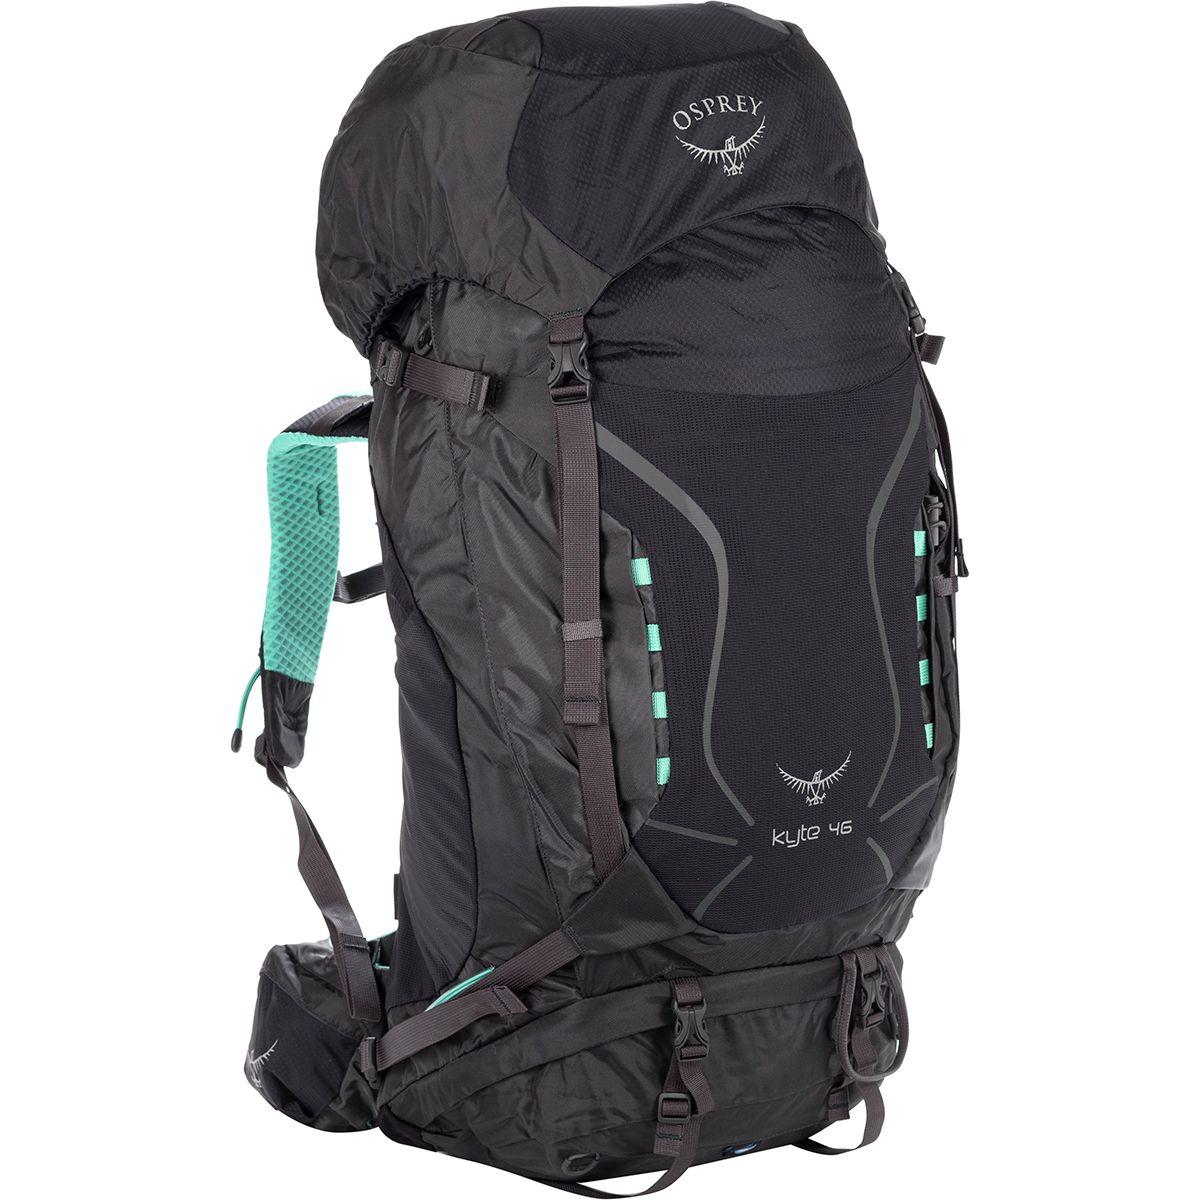 Osprey Packs Kyte 46 Backpack - 2685-2807cu in - Women's